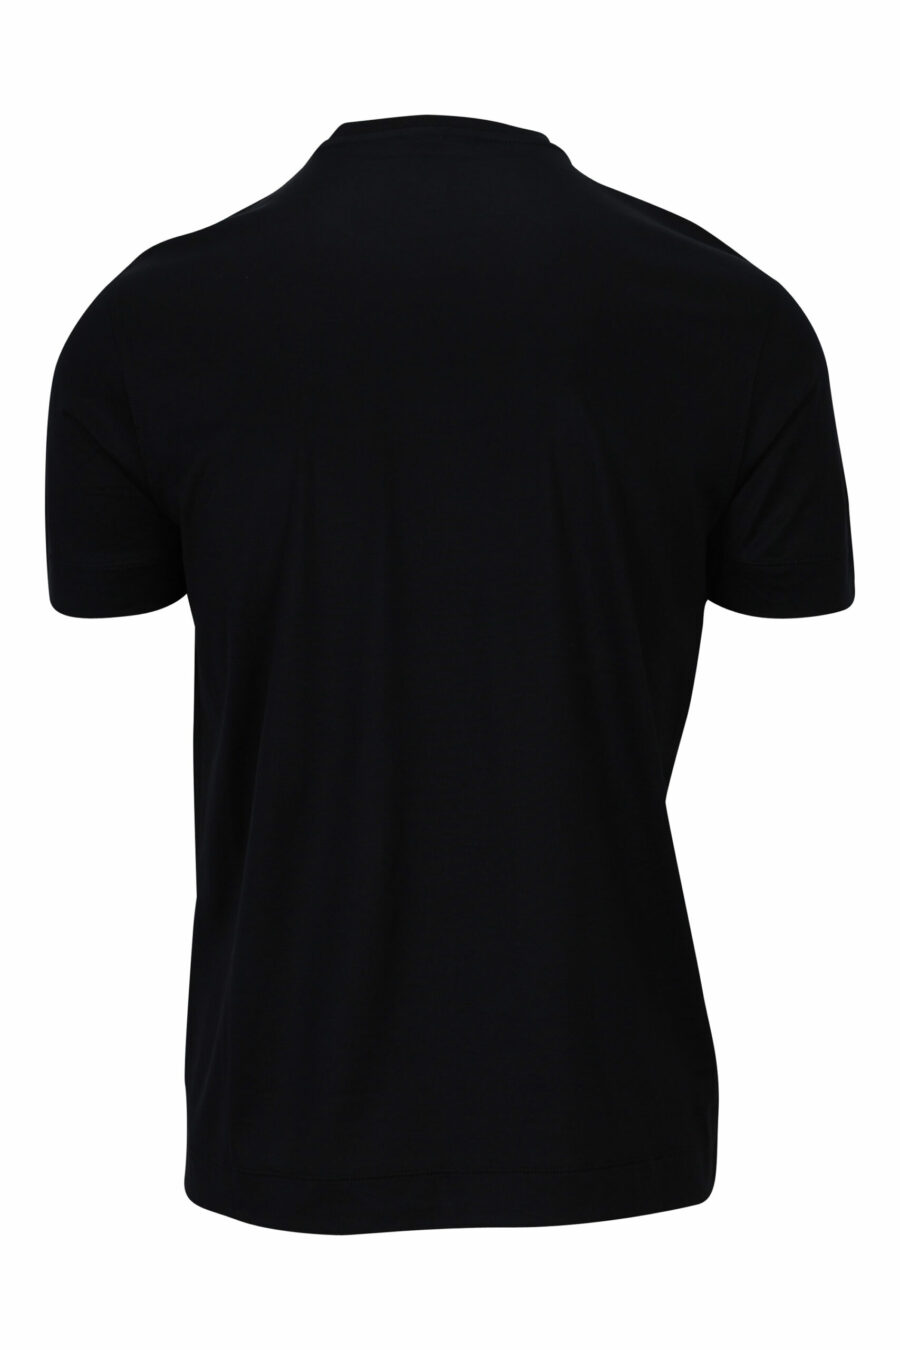 Schwarzes T-Shirt mit weißem Adler maxilogo skizziert - 8057767554040 1 skaliert